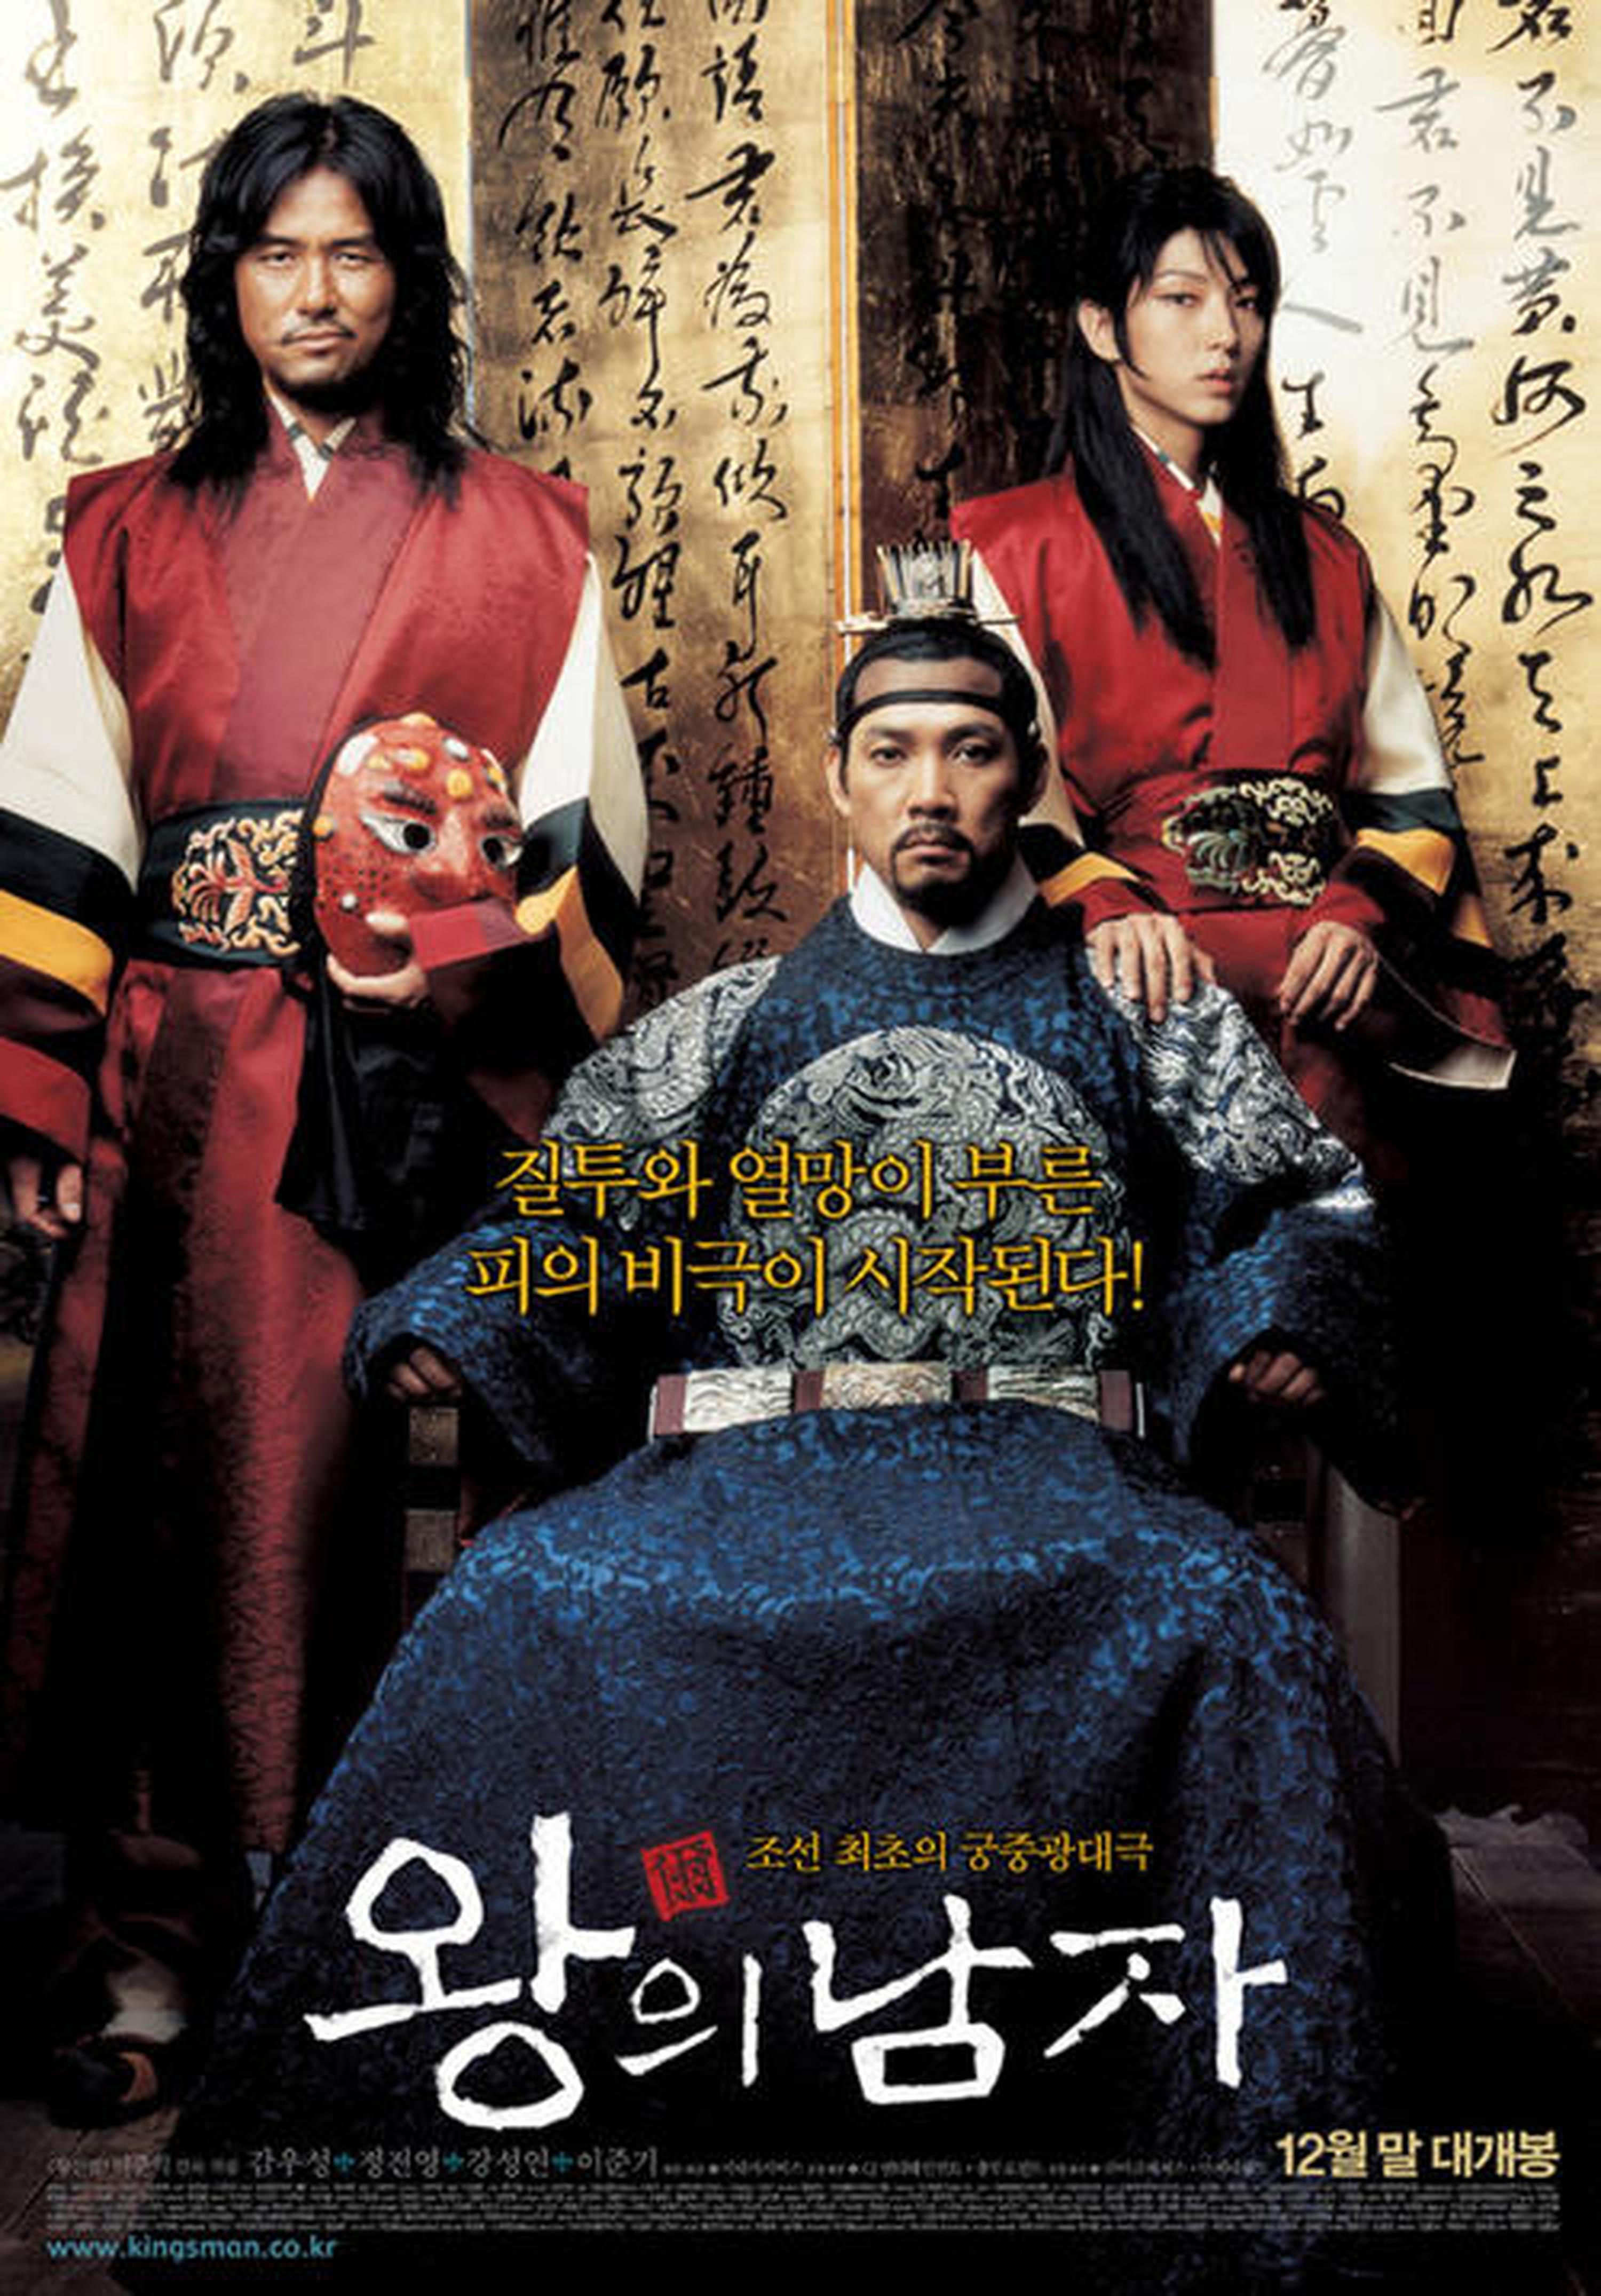 【2000-2010】《王的男人》 (2005)导演李濬益。影片以低成本最终动员导1230万观影人次，被视作韩国电影神话，目前排名韩国历年票房榜第13位。该片题材敏感涉及到了同性恋情节。